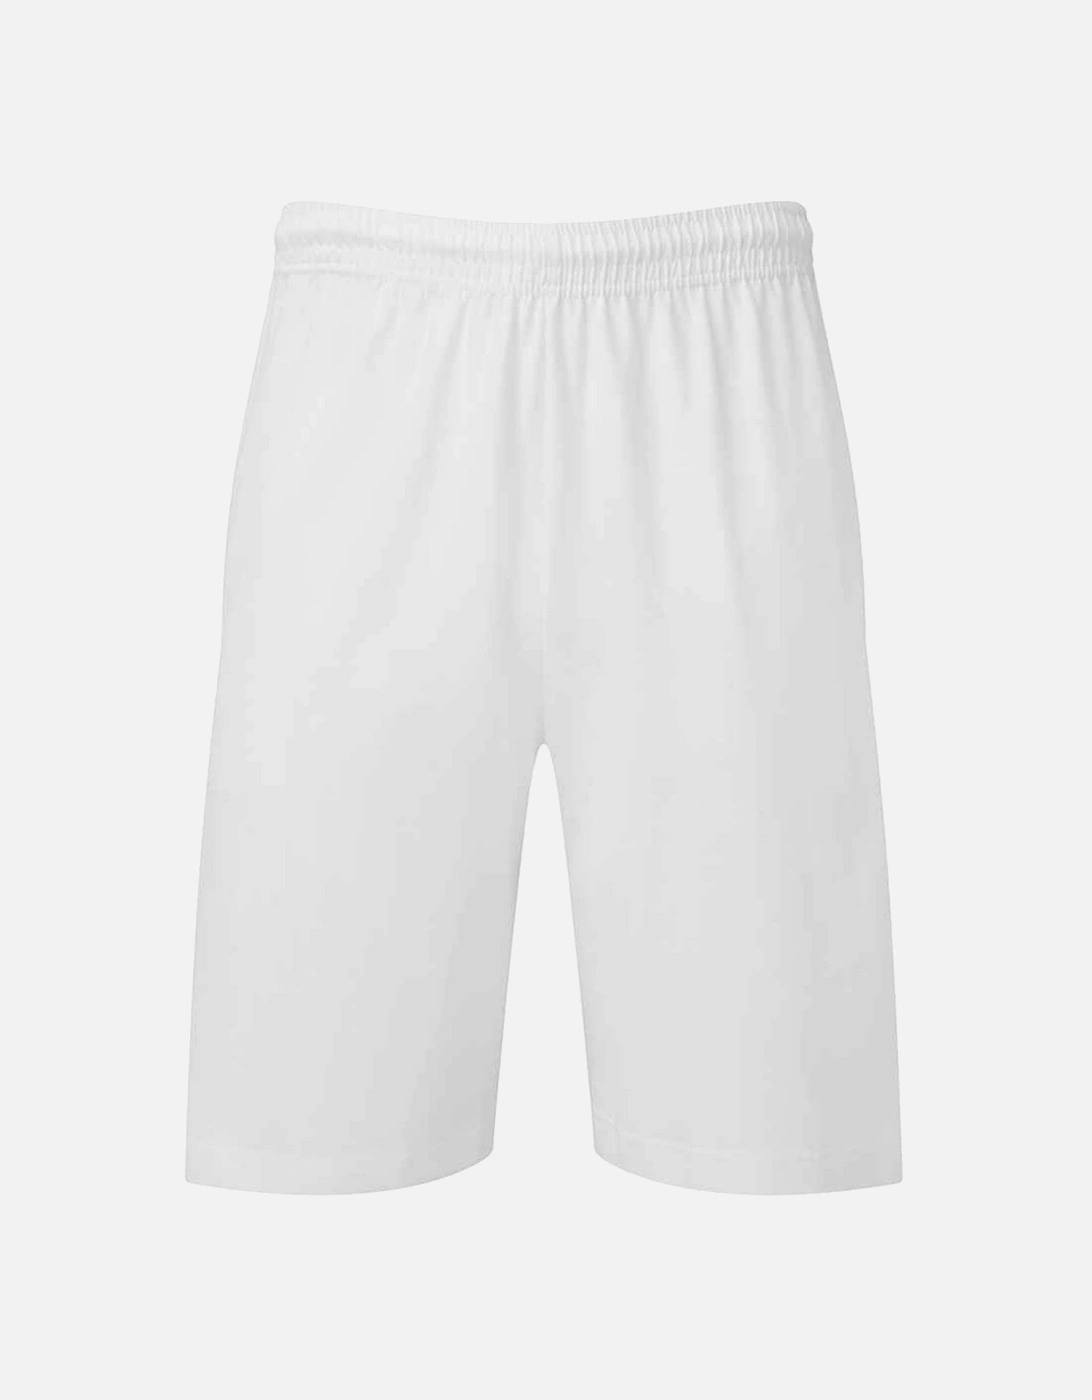 Unisex Adult Iconic 195 Jersey Shorts, 4 of 3